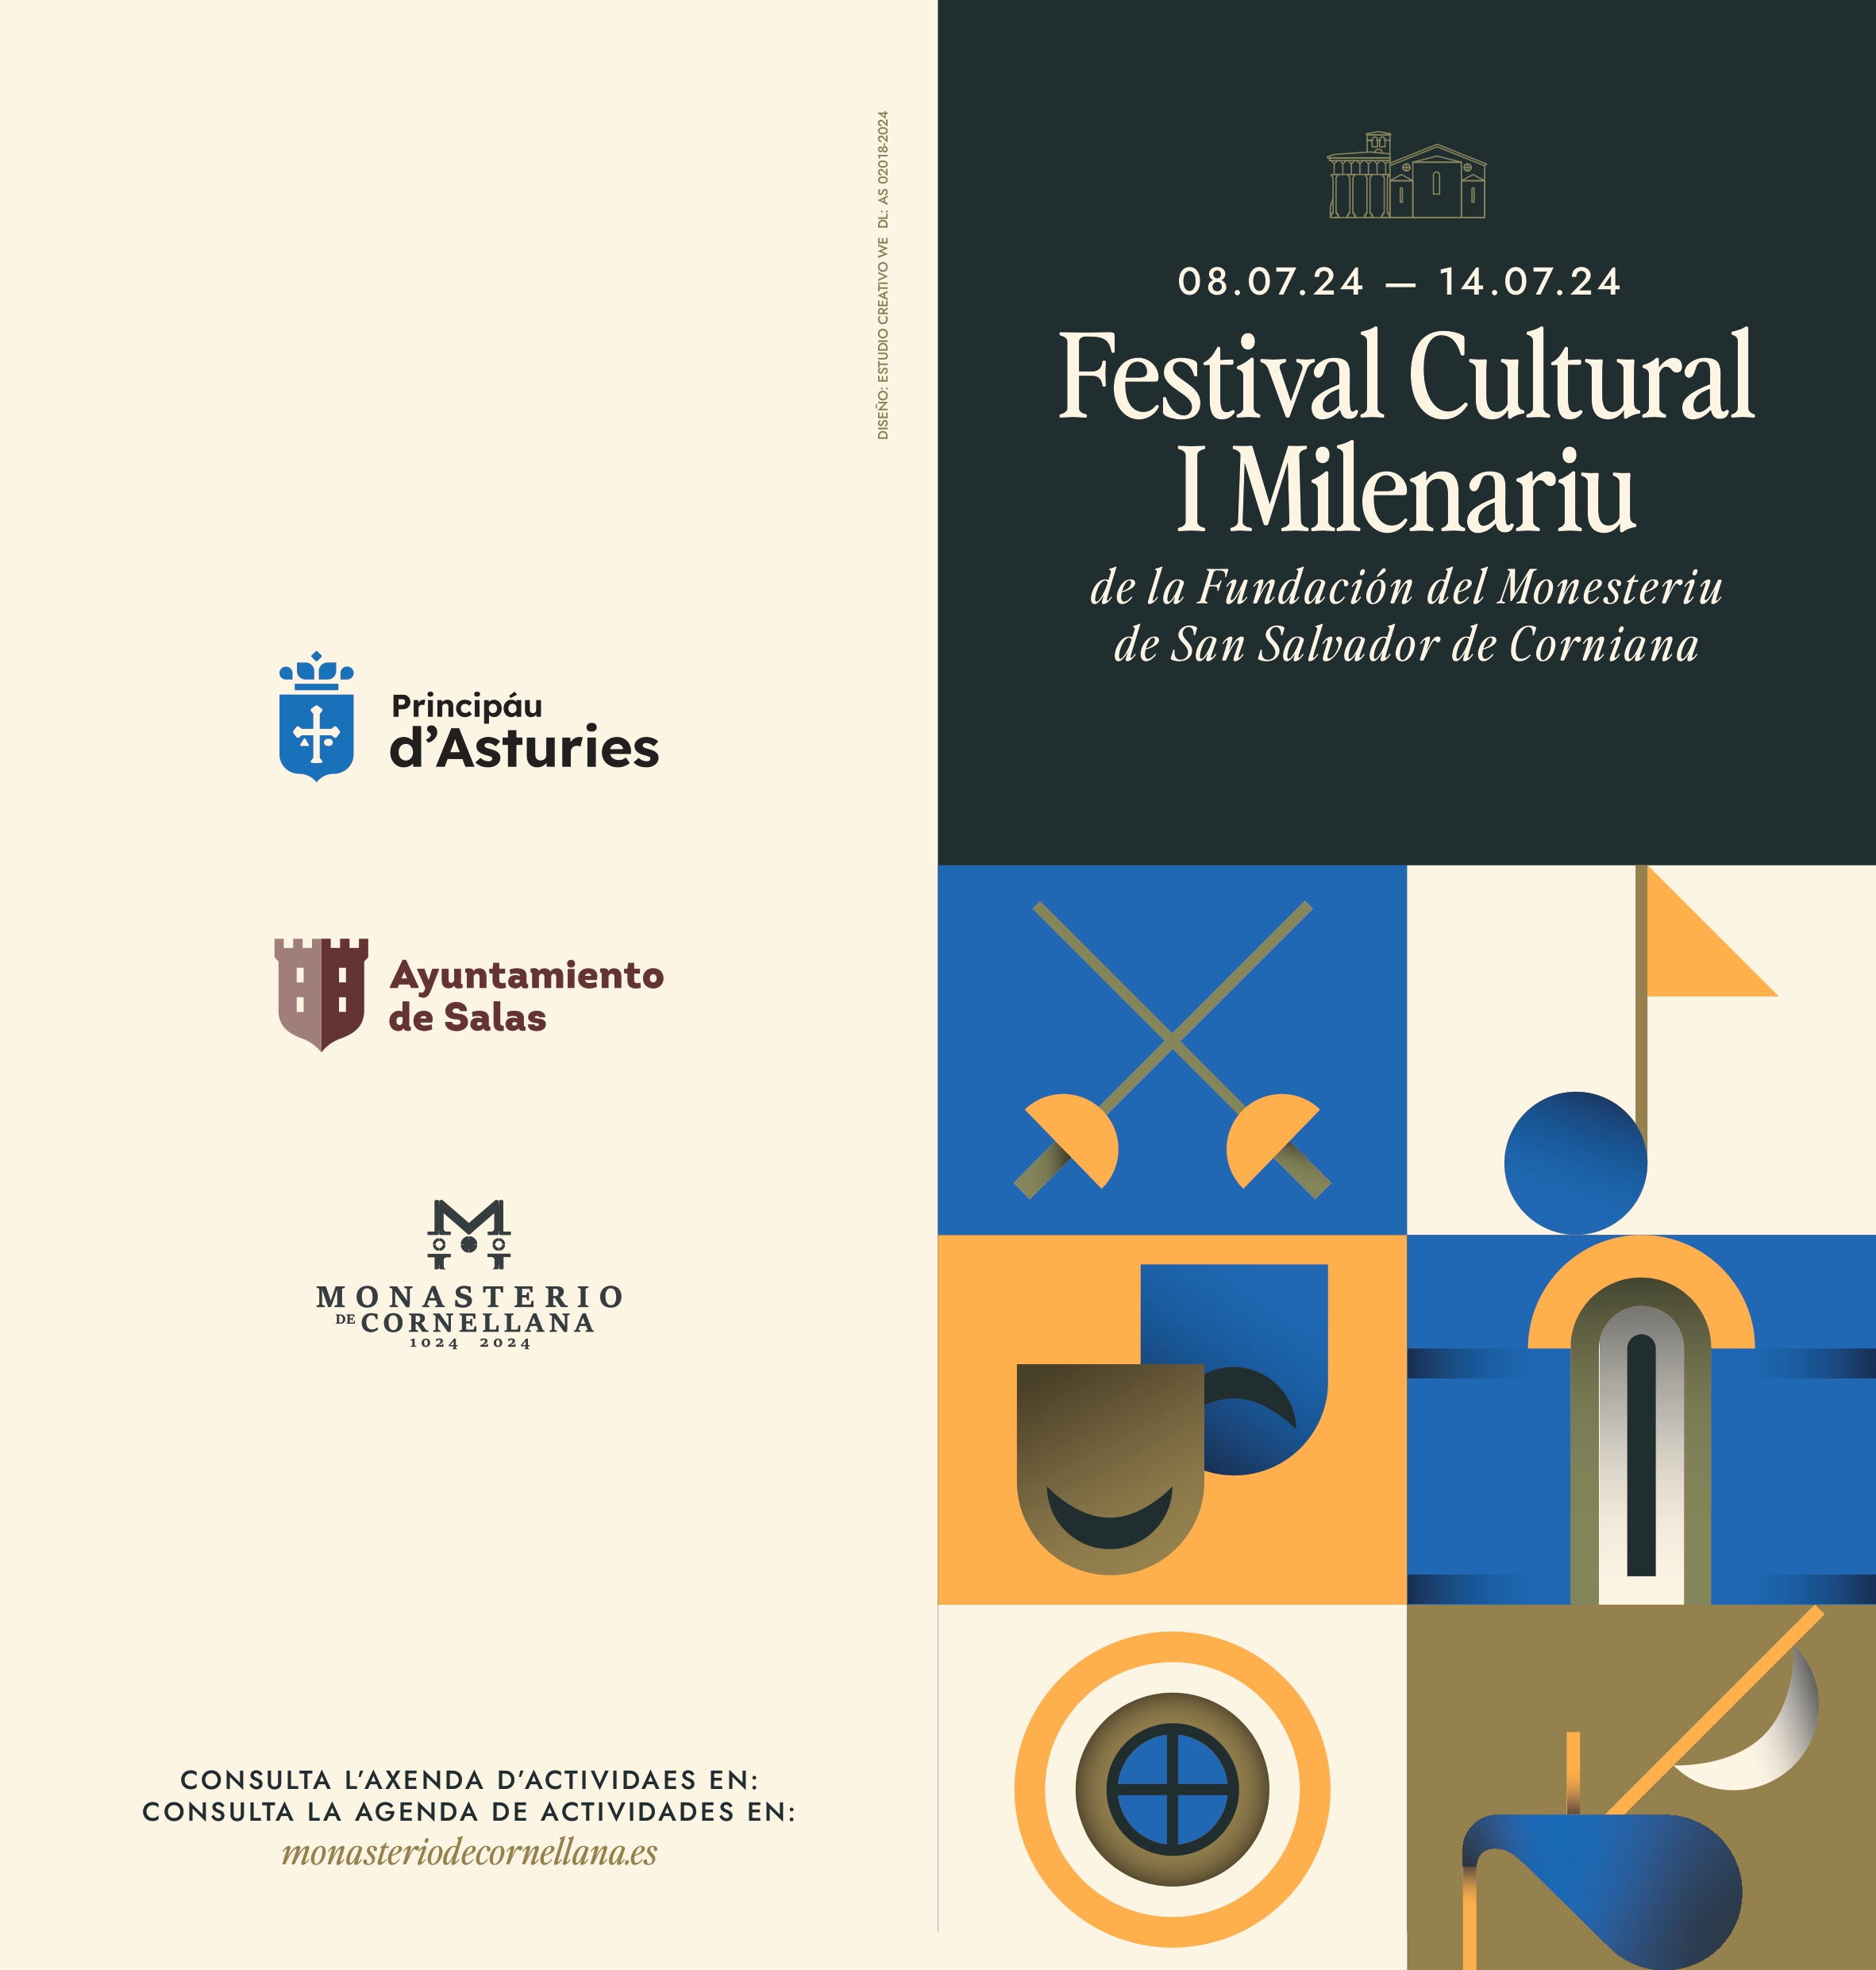 Imagen - Cultura organizará un festival con siete días de música y teatro para celebrar el milenario del monasterio de Corniana/Cornellana